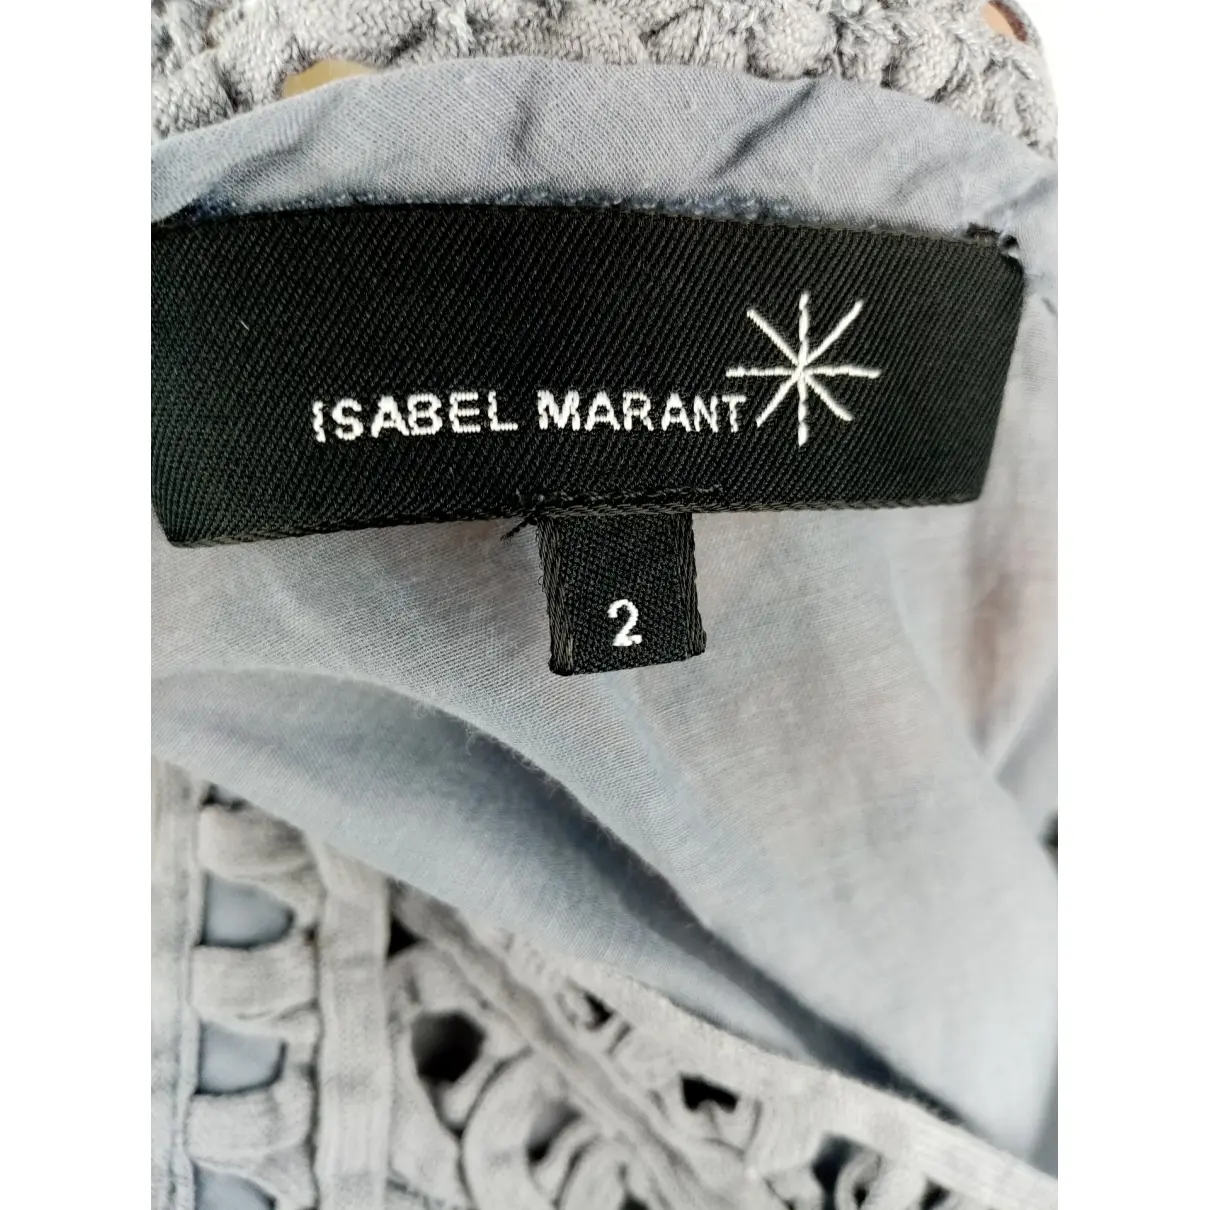 Buy Isabel Marant Etoile Blue Cotton Top online